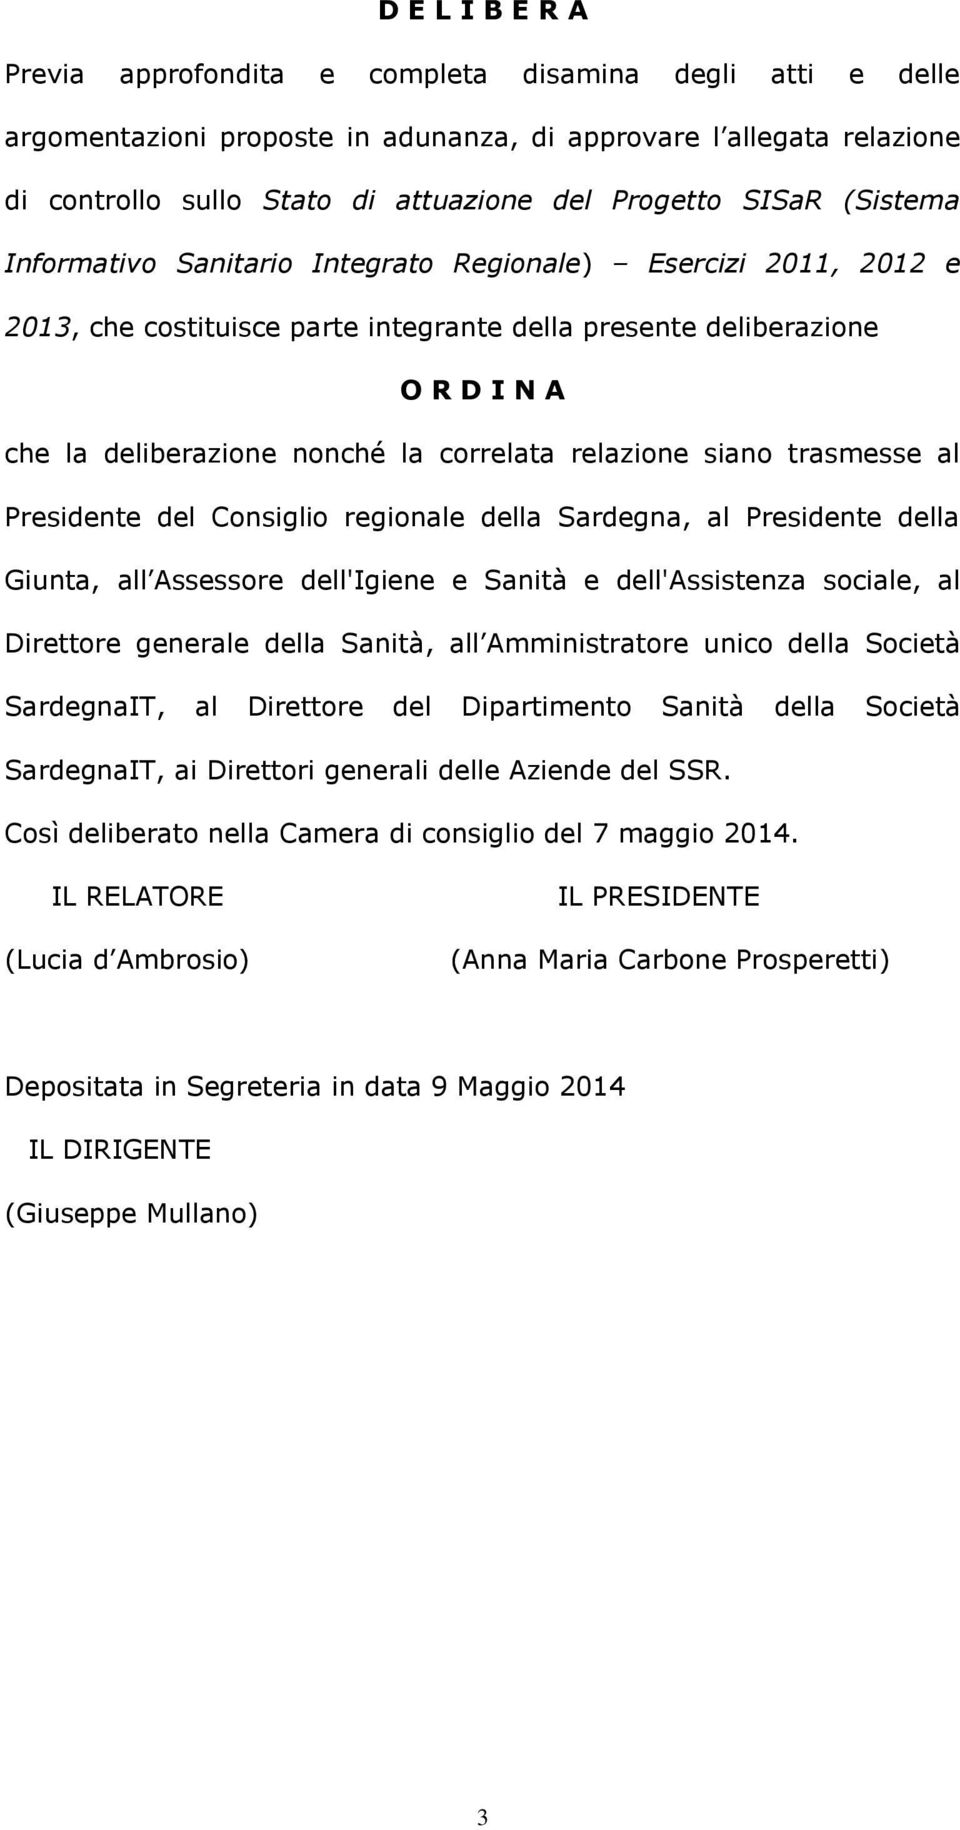 correlata relazione siano trasmesse al Presidente del Consiglio regionale della Sardegna, al Presidente della Giunta, all Assessore dell'igiene e Sanità e dell'assistenza sociale, al Direttore